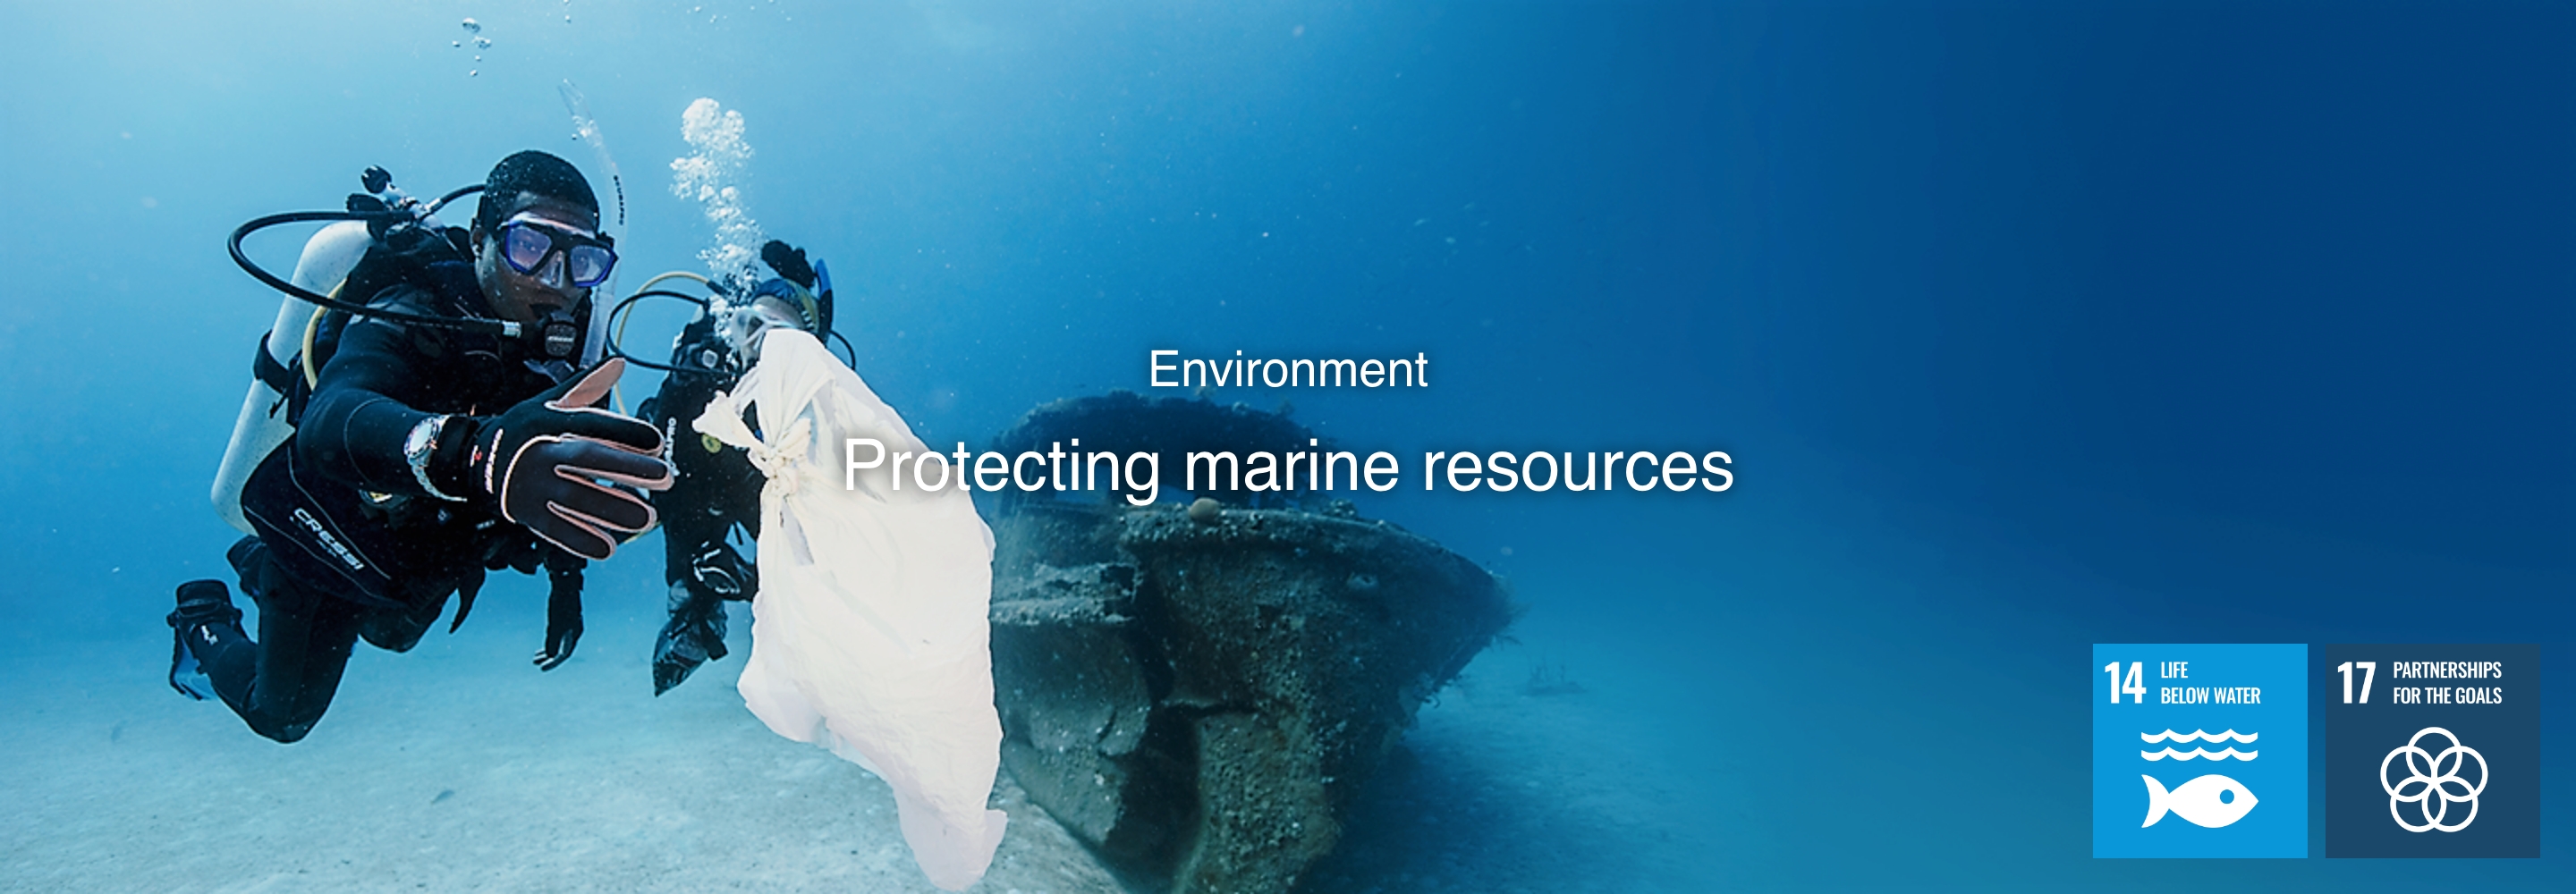 สิ่งแวดล้อม การปกป้องรักษาทรัพยากรทางทะเล